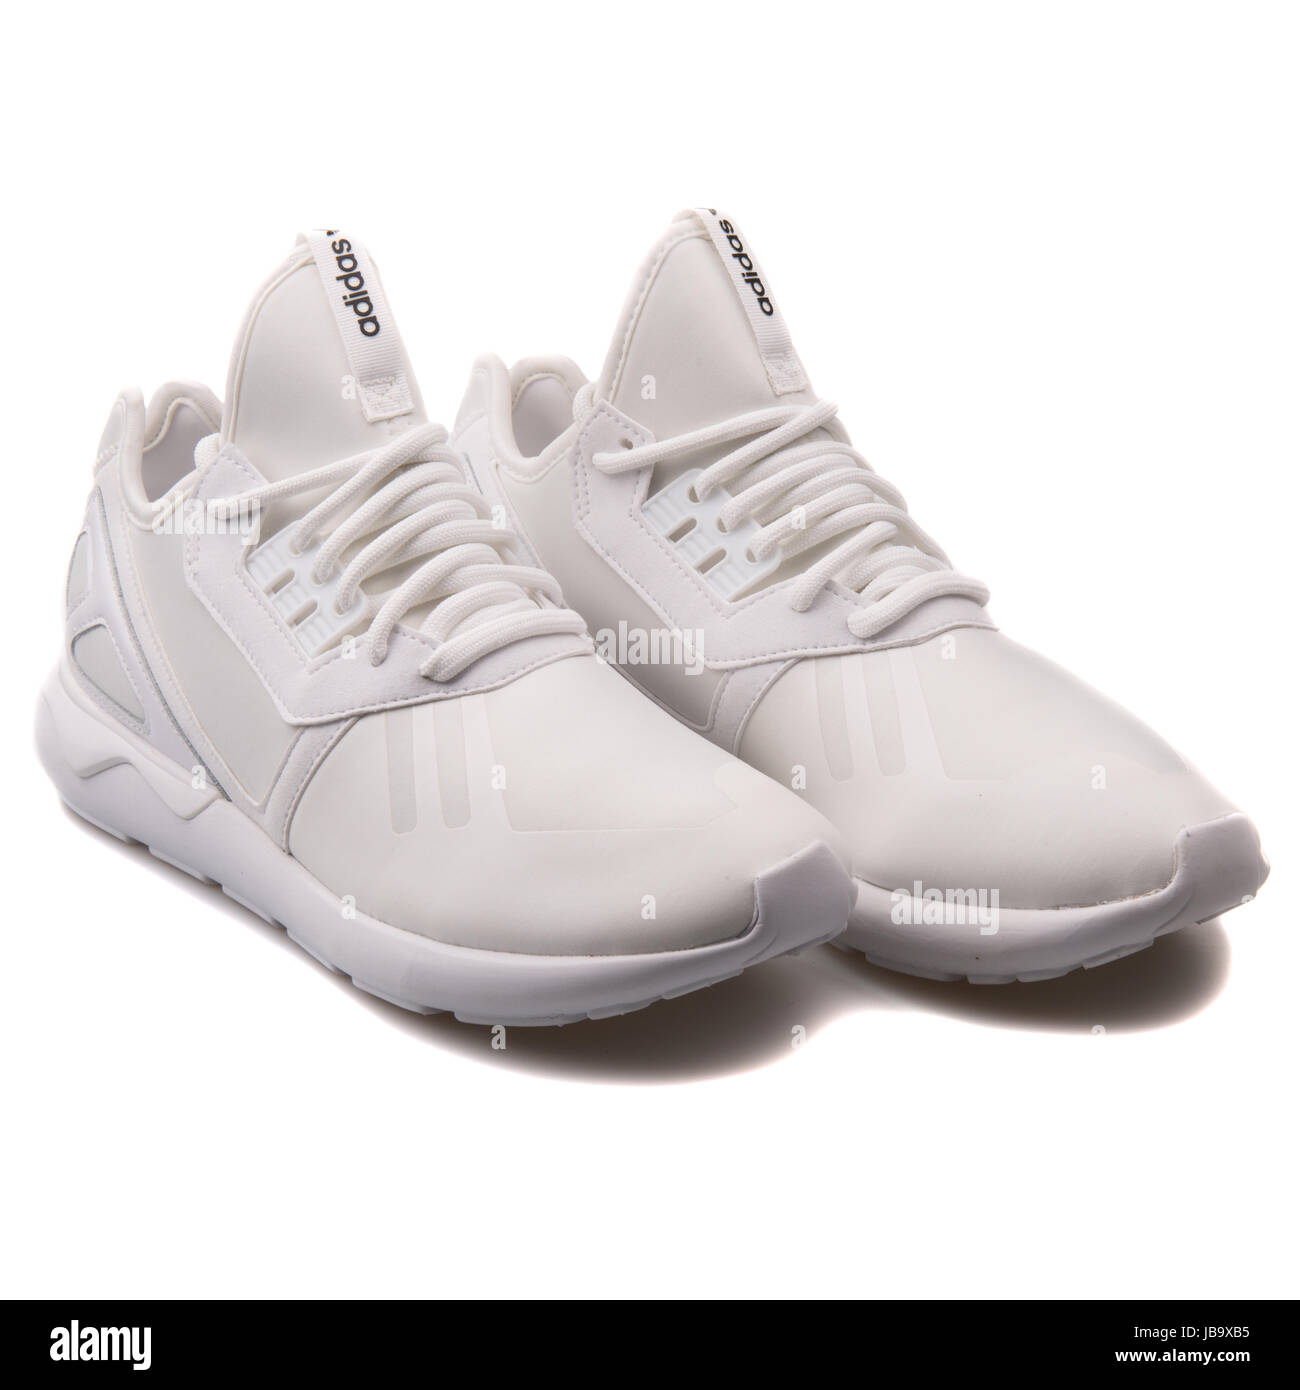 tubular runner adidas white